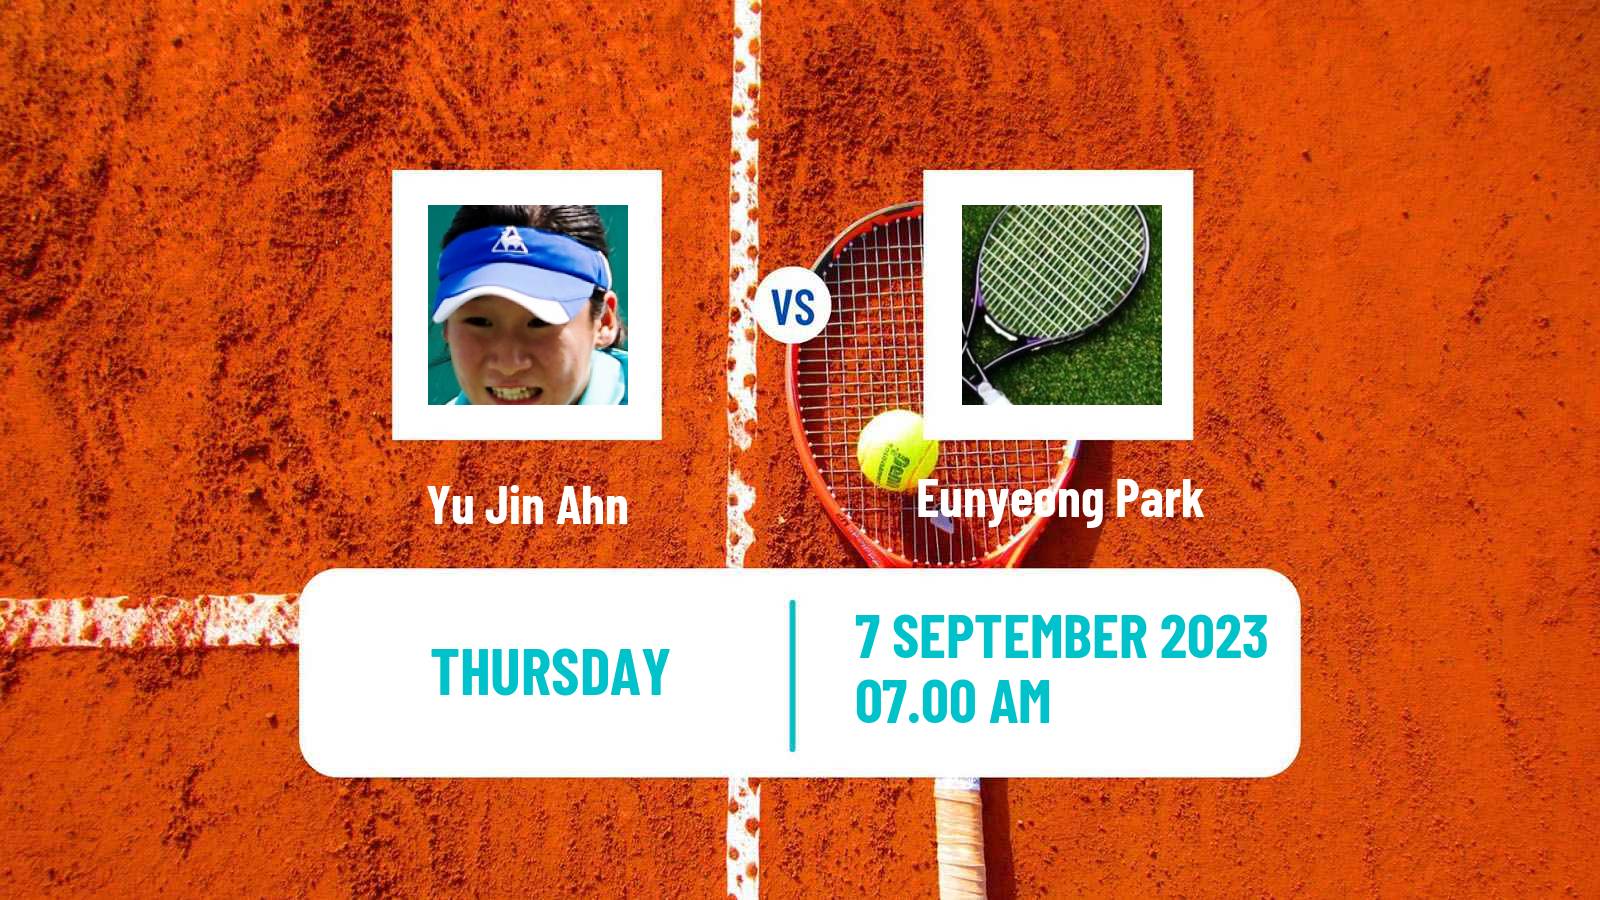 Tennis ITF W15 Yeongwol 2 Women Yu Jin Ahn - Eunyeong Park